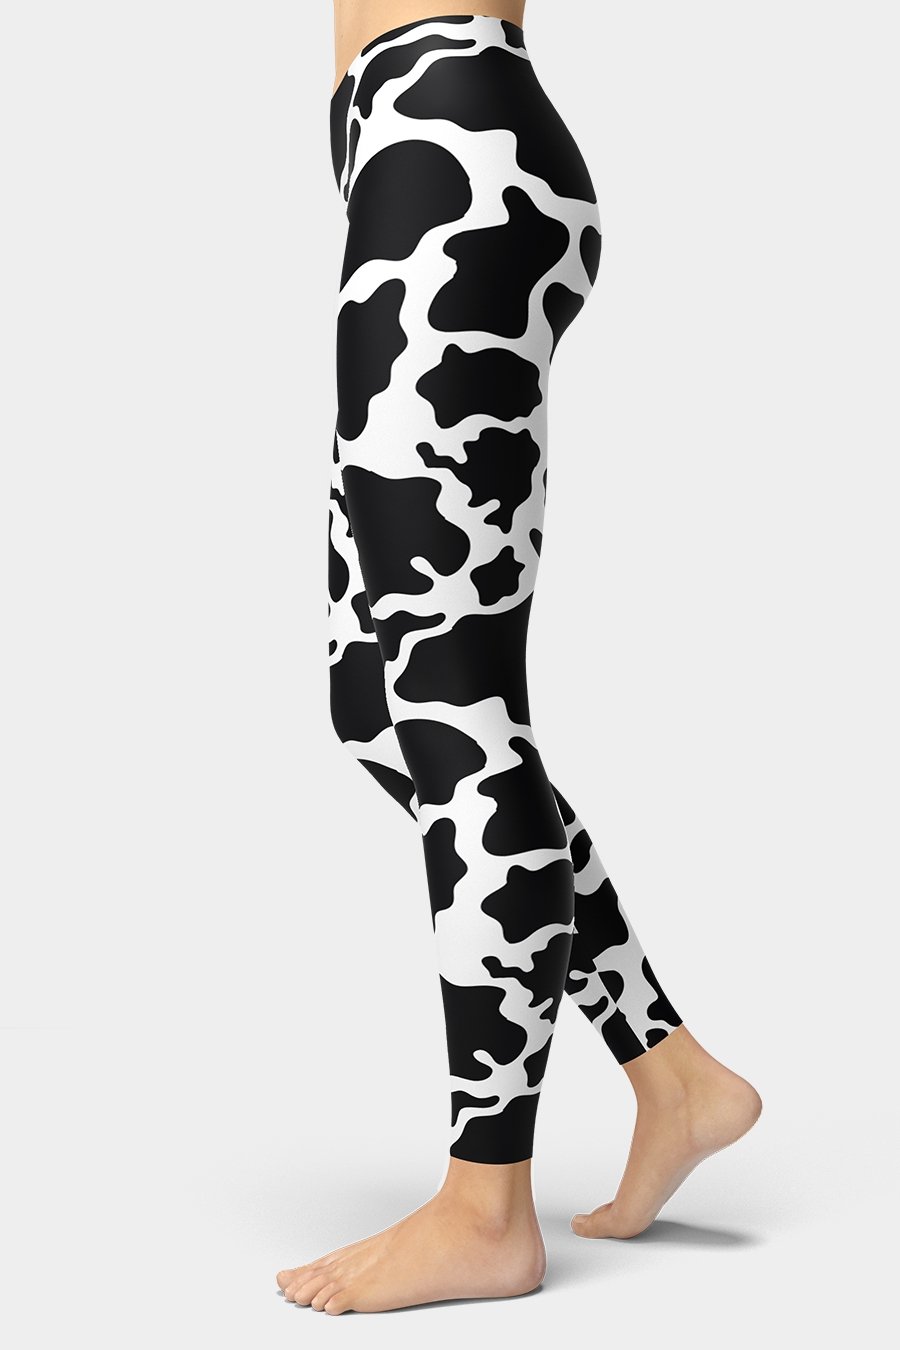 Cow Leggings - SeeMyLeggings